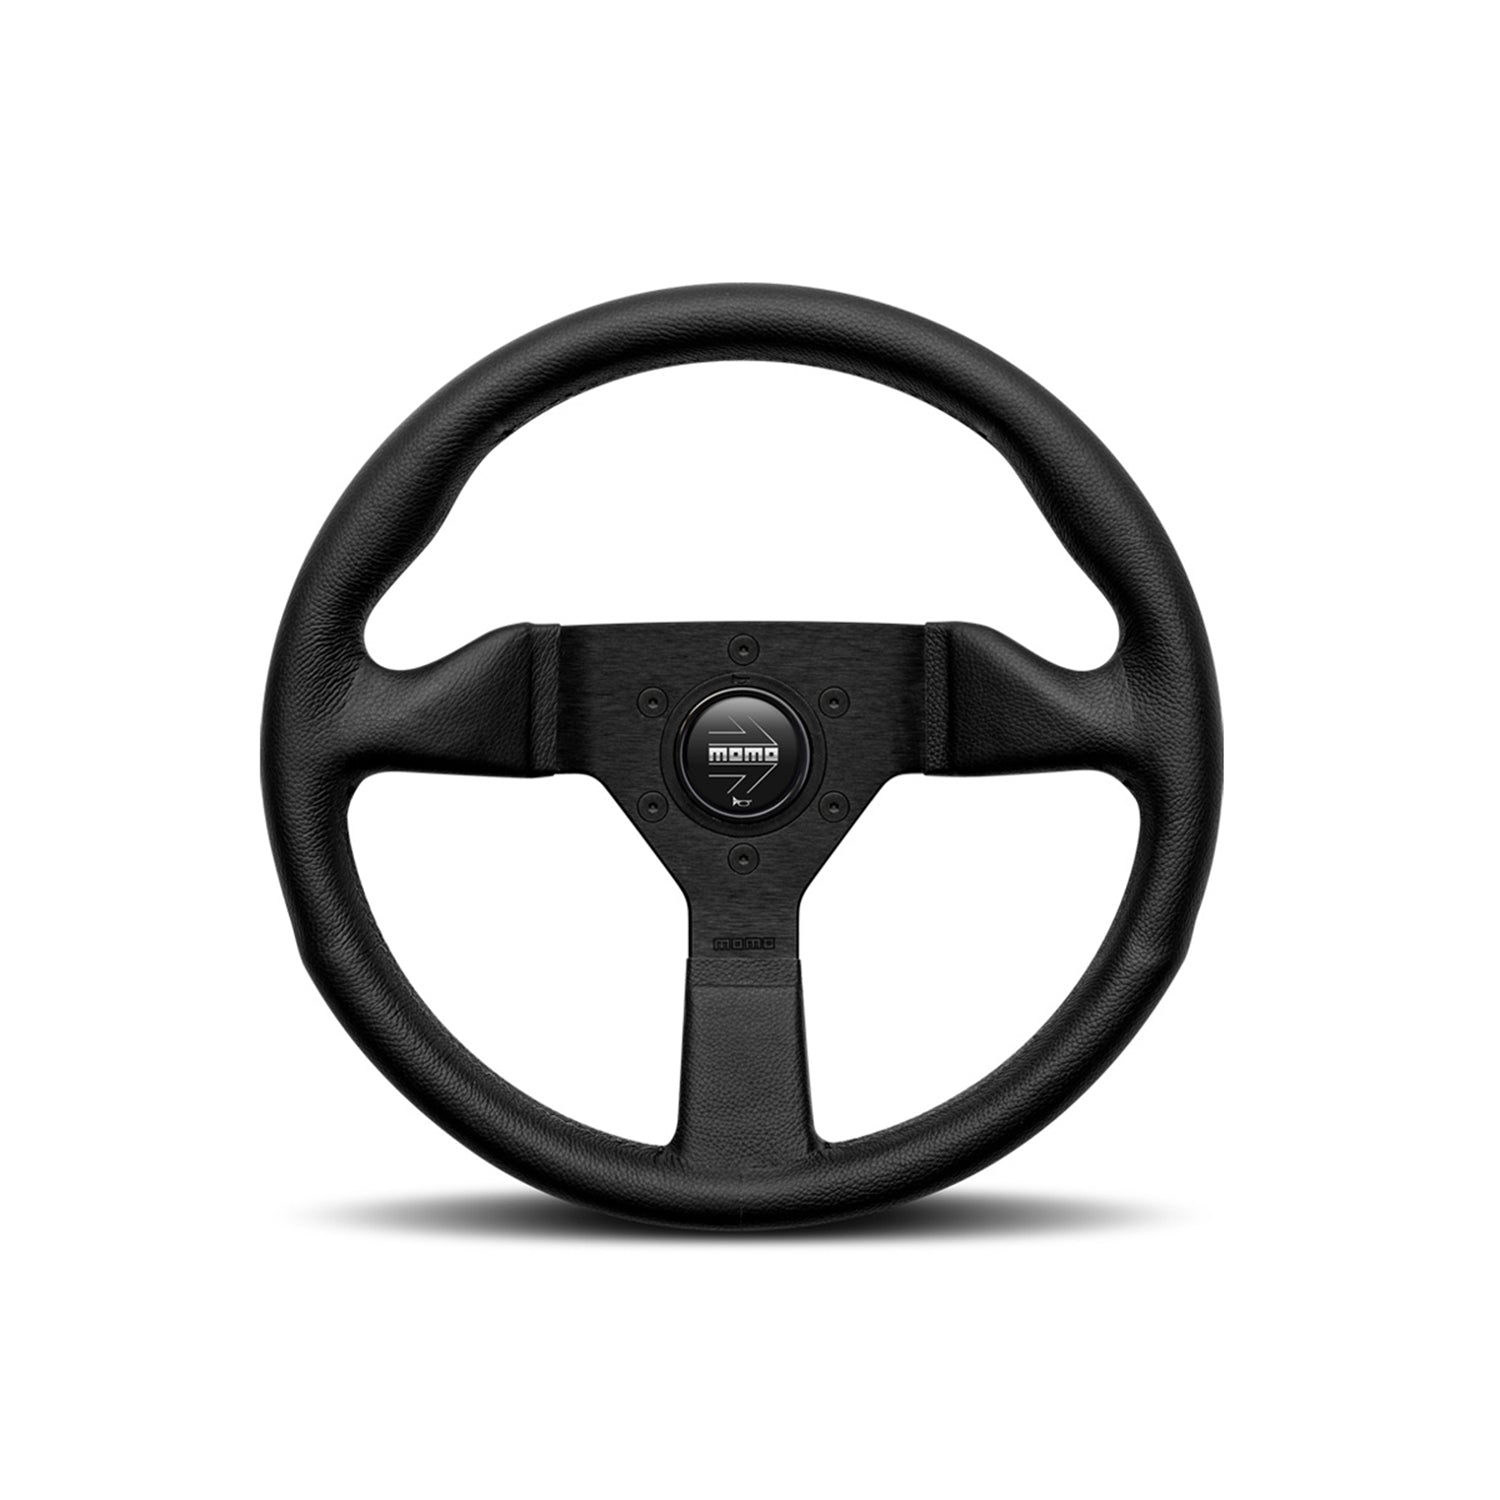 MOMO Montecarlo Steering Wheel In Black Leather 320mm Diameter